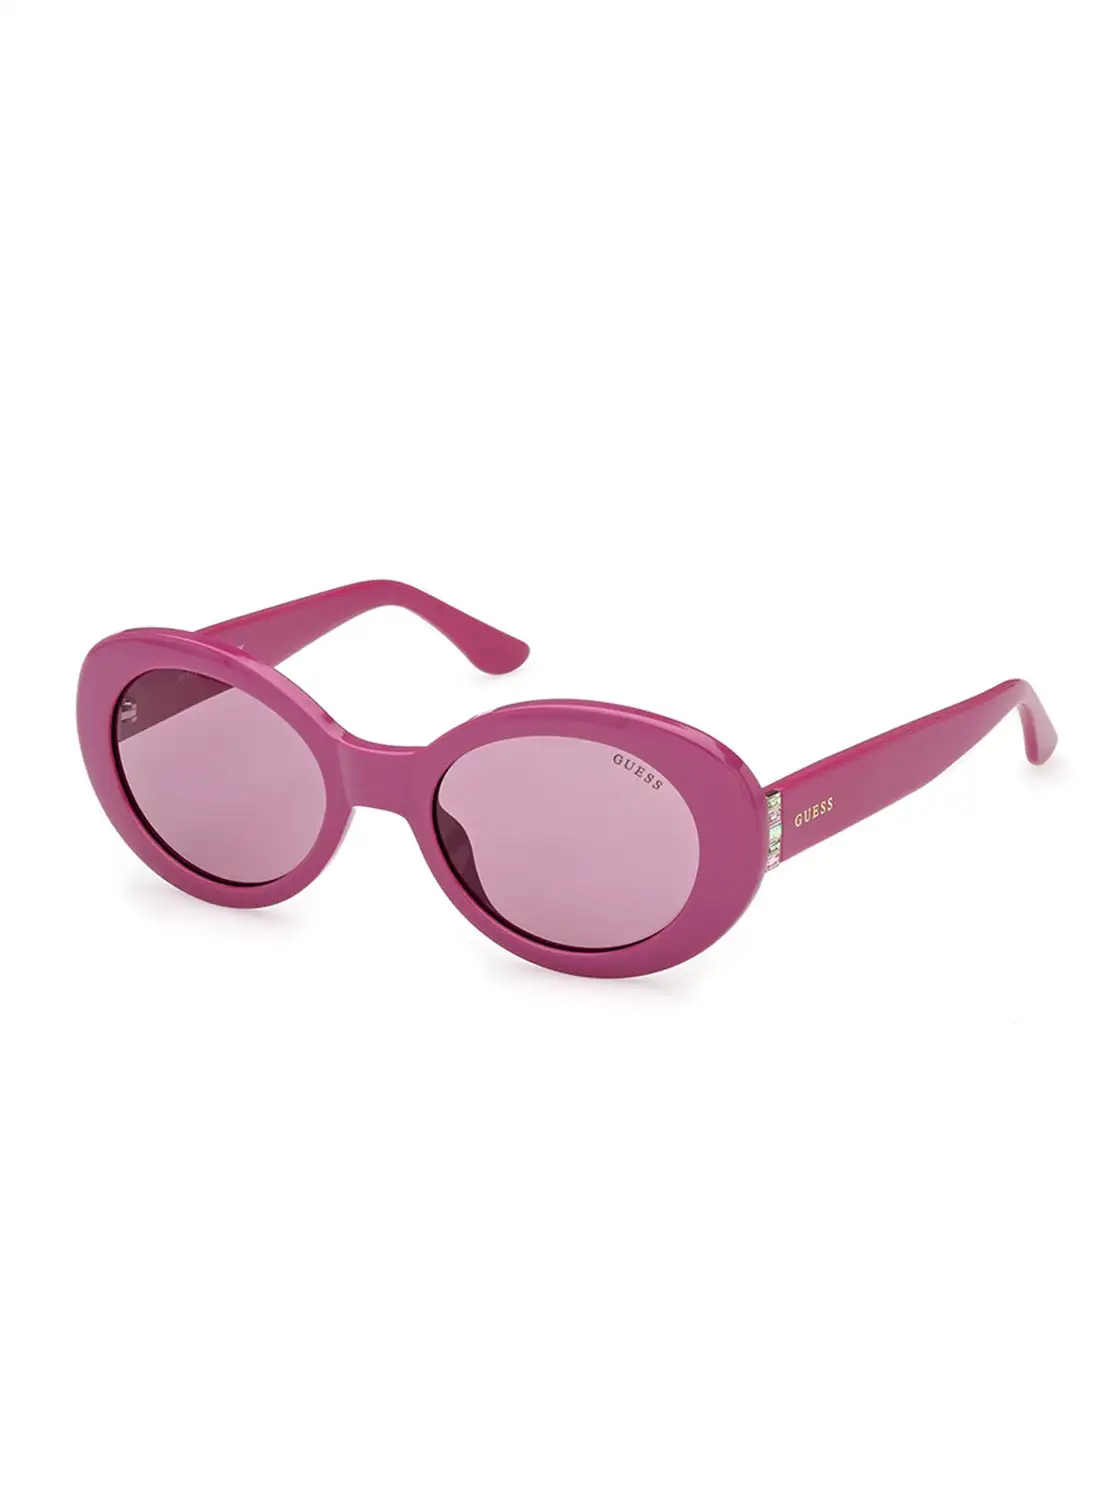 نظارة شمسية للنساء من جيس بيضاوية الشكل للحماية من الأشعة فوق البنفسجية - GU790483Y51 - مقاس العدسة: 51 ملم